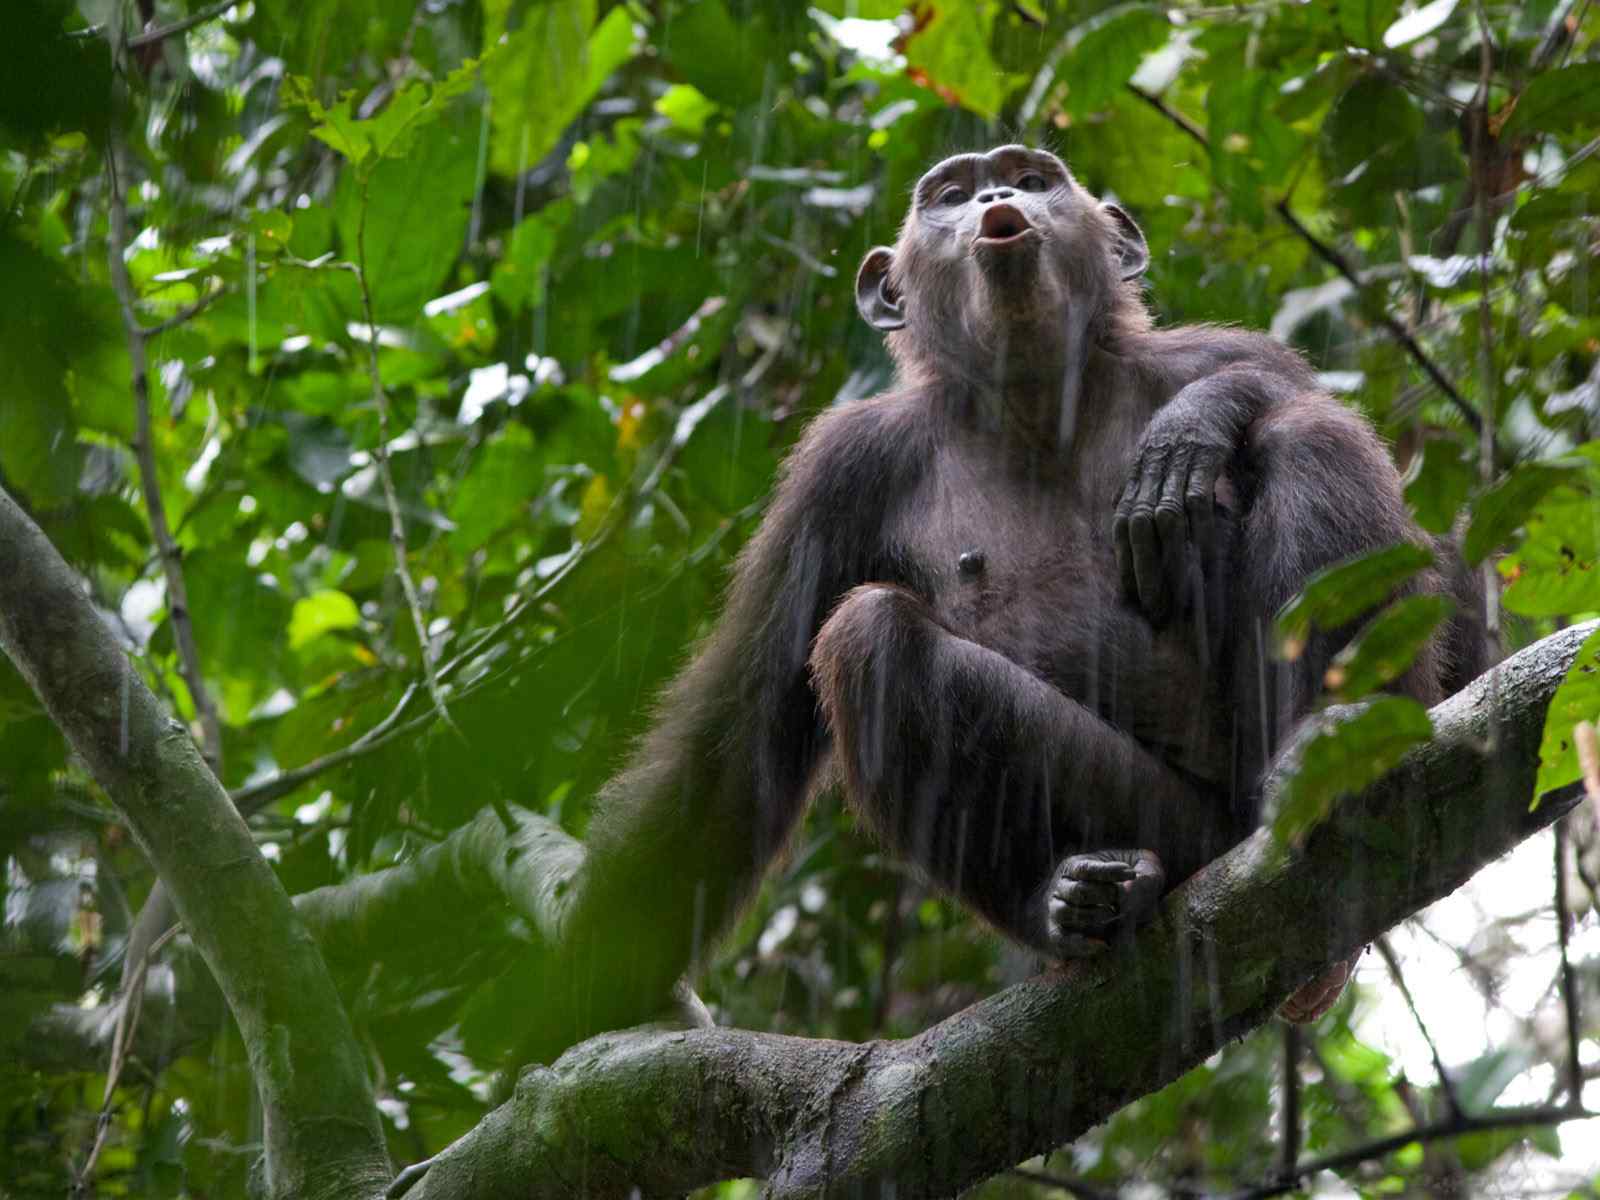 雨后森林猴子动物摄影壁纸